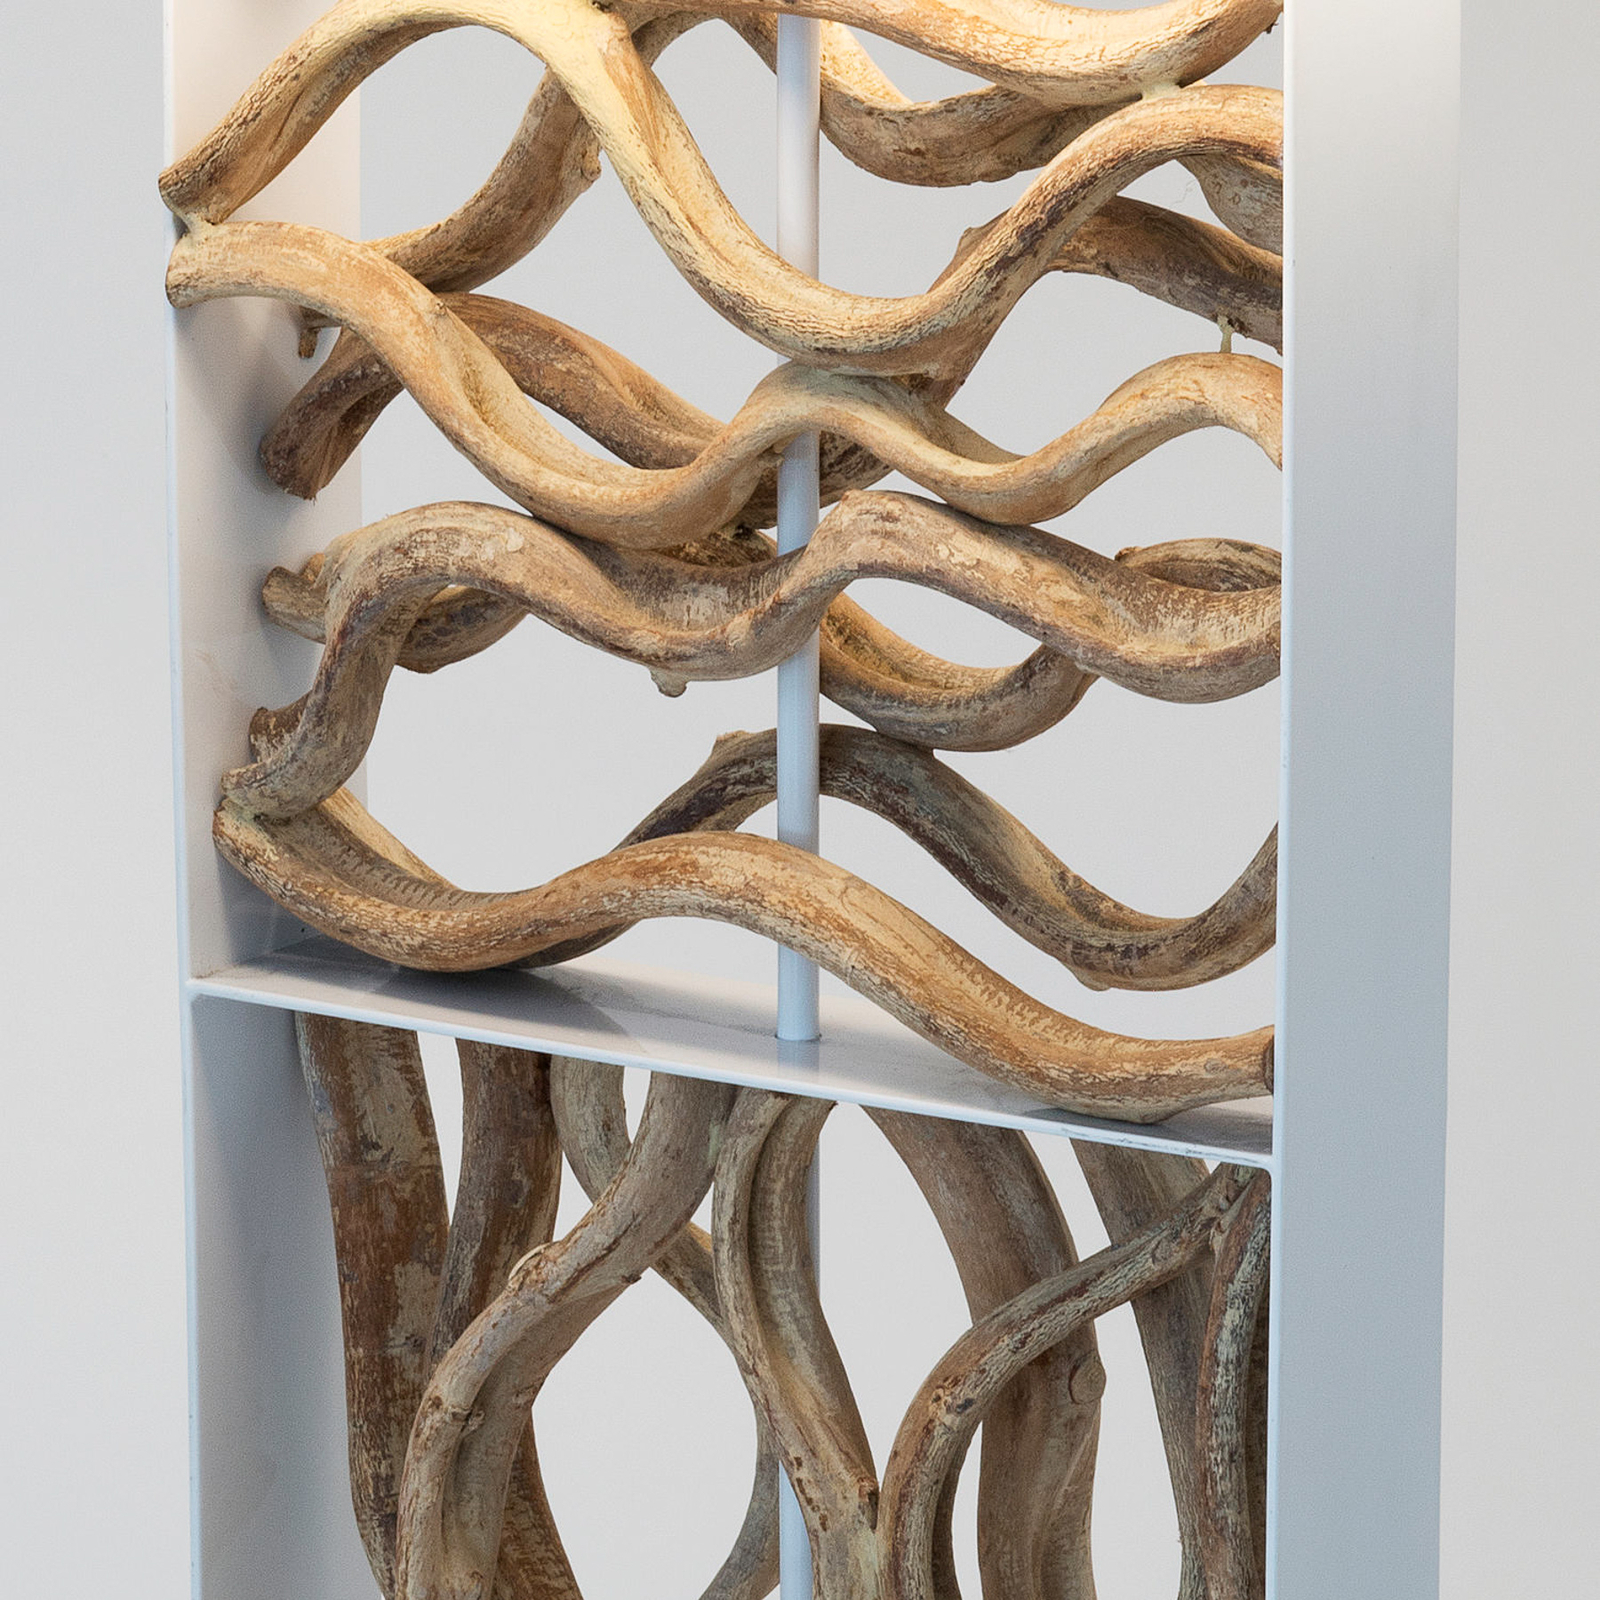 Vloerlamp Tremiti, houtkleurig/beige, hoogte 160 cm, hout